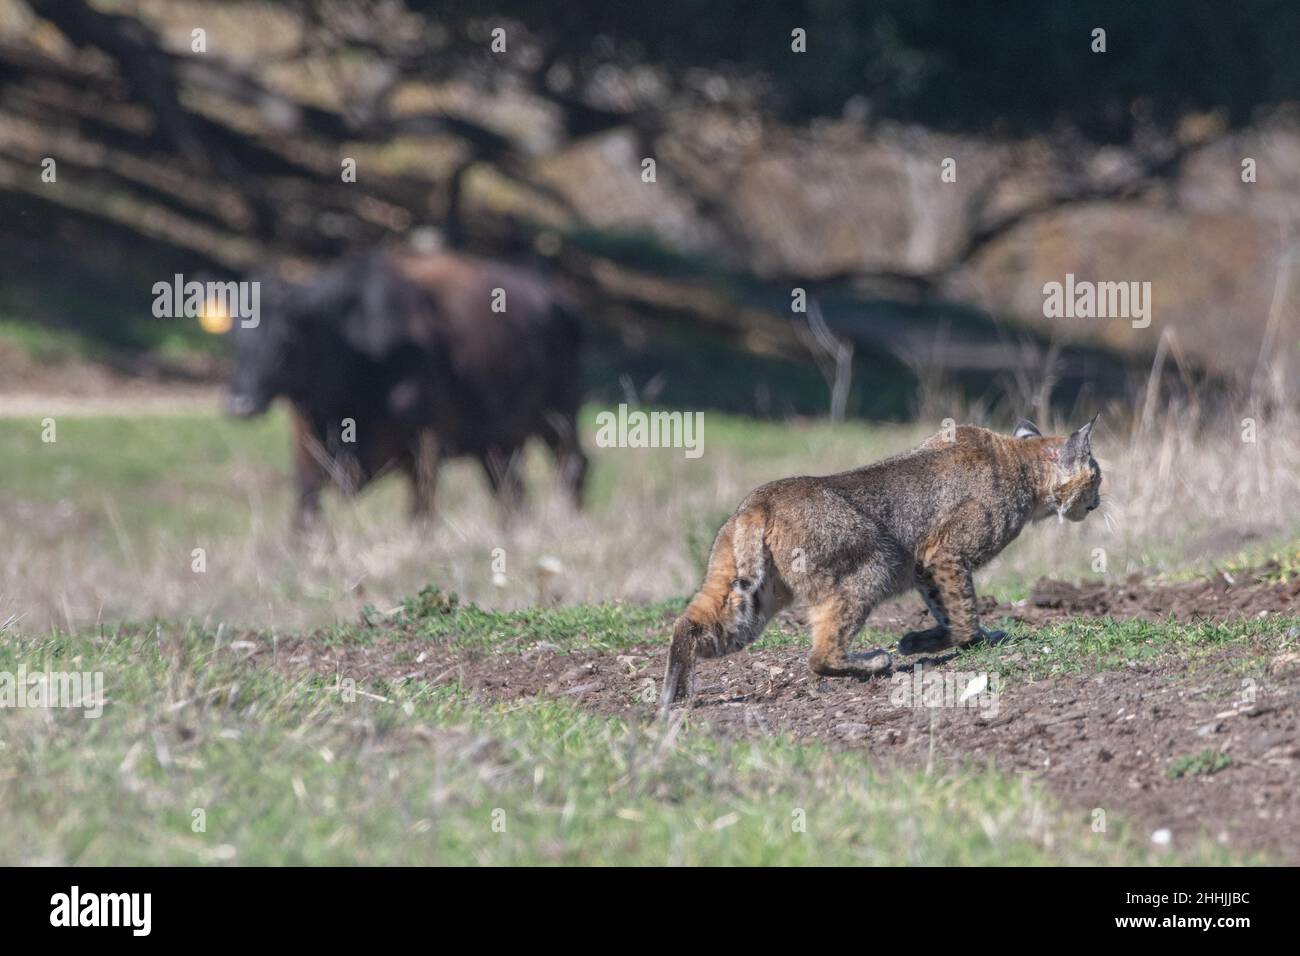 Un bobcat (Lynx rufus) si prowls davanti ad una mucca che pascola sullo sfondo, il 2 condividono habitat e raramente interagiscono in California, USA. Foto Stock